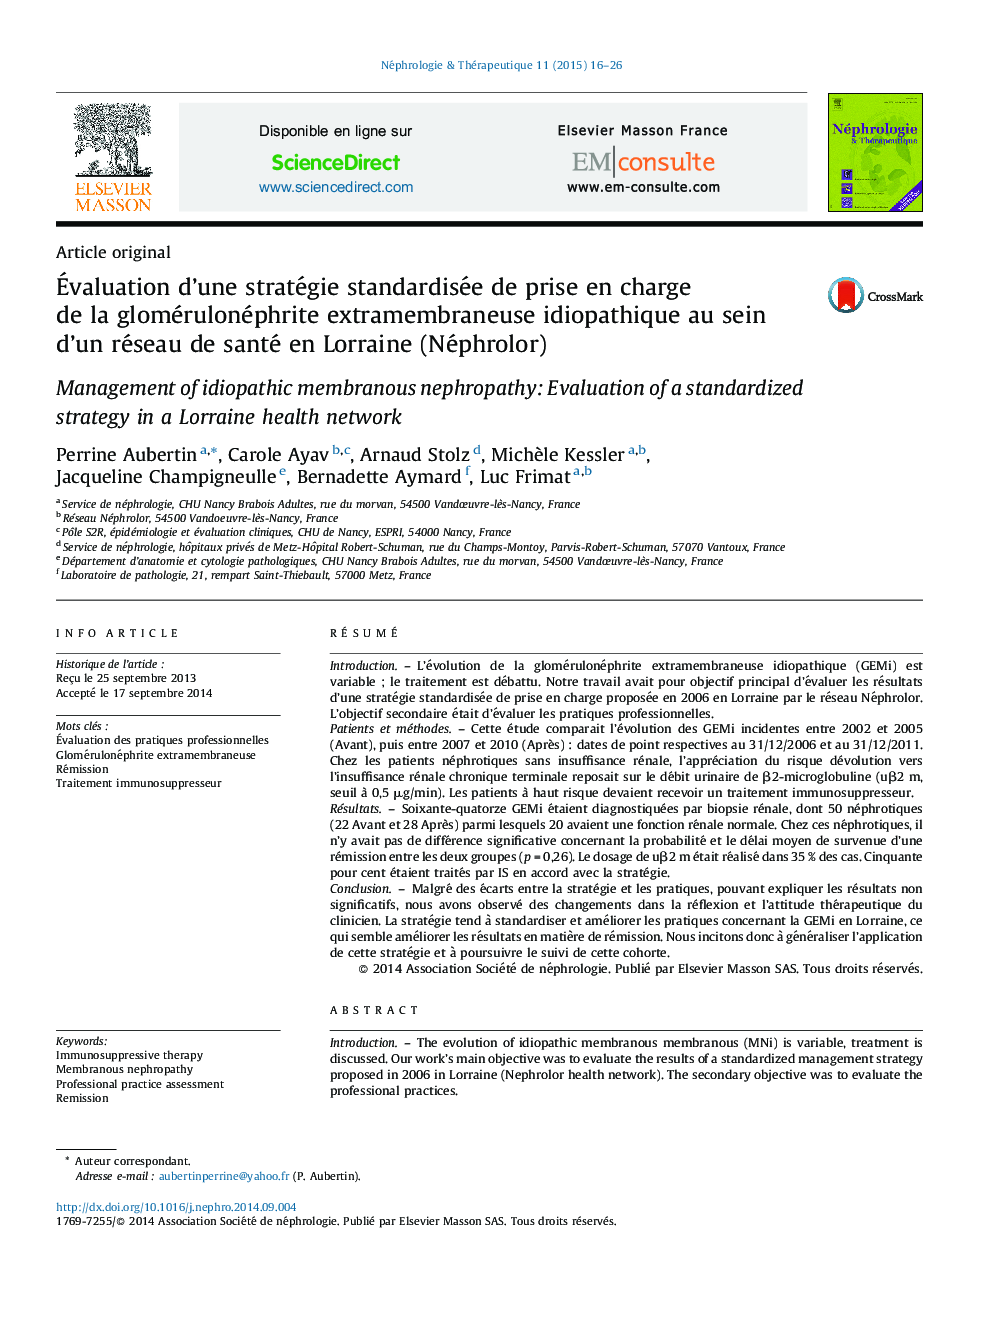 Évaluation d’une stratégie standardisée de prise en charge de la glomérulonéphrite extramembraneuse idiopathique au sein d’un réseau de santé en Lorraine (Néphrolor)